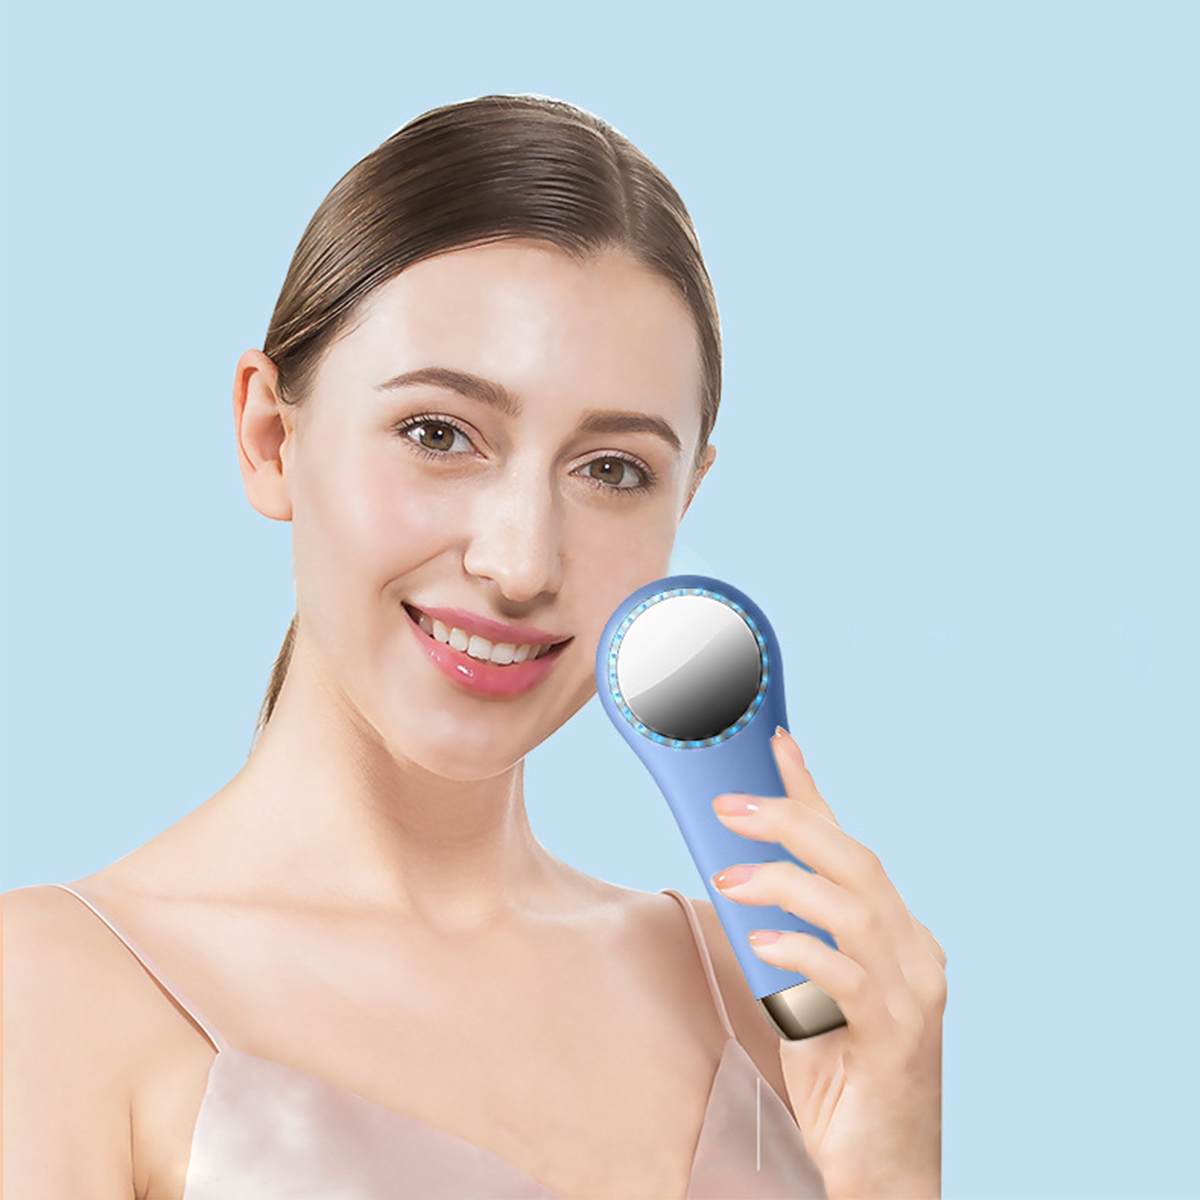 Rot-Blau-Licht Schwarz SHAOKE mit Silikongel Vibration Wärme-Kältefunktion Gesichtsreinigungsbürste Gesichtswaschgerät,